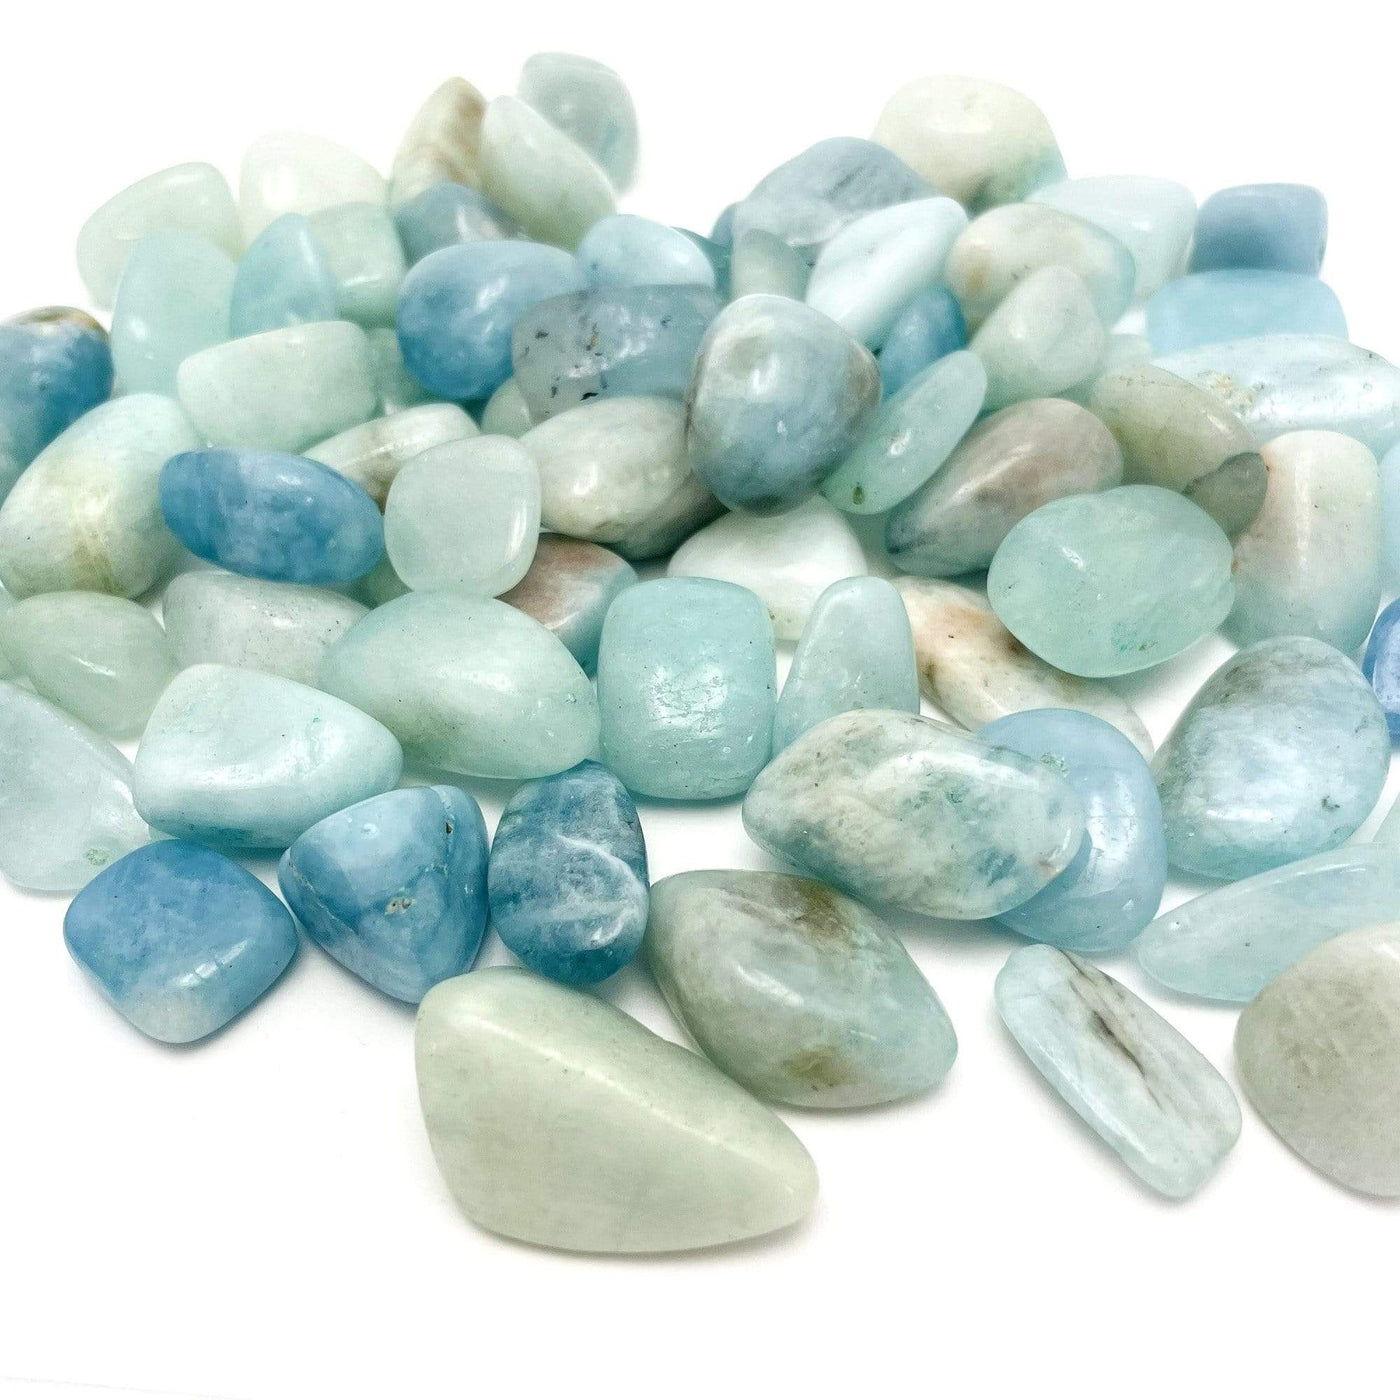 pile of Aquamarine Tumbled Stones Nuggets on white background